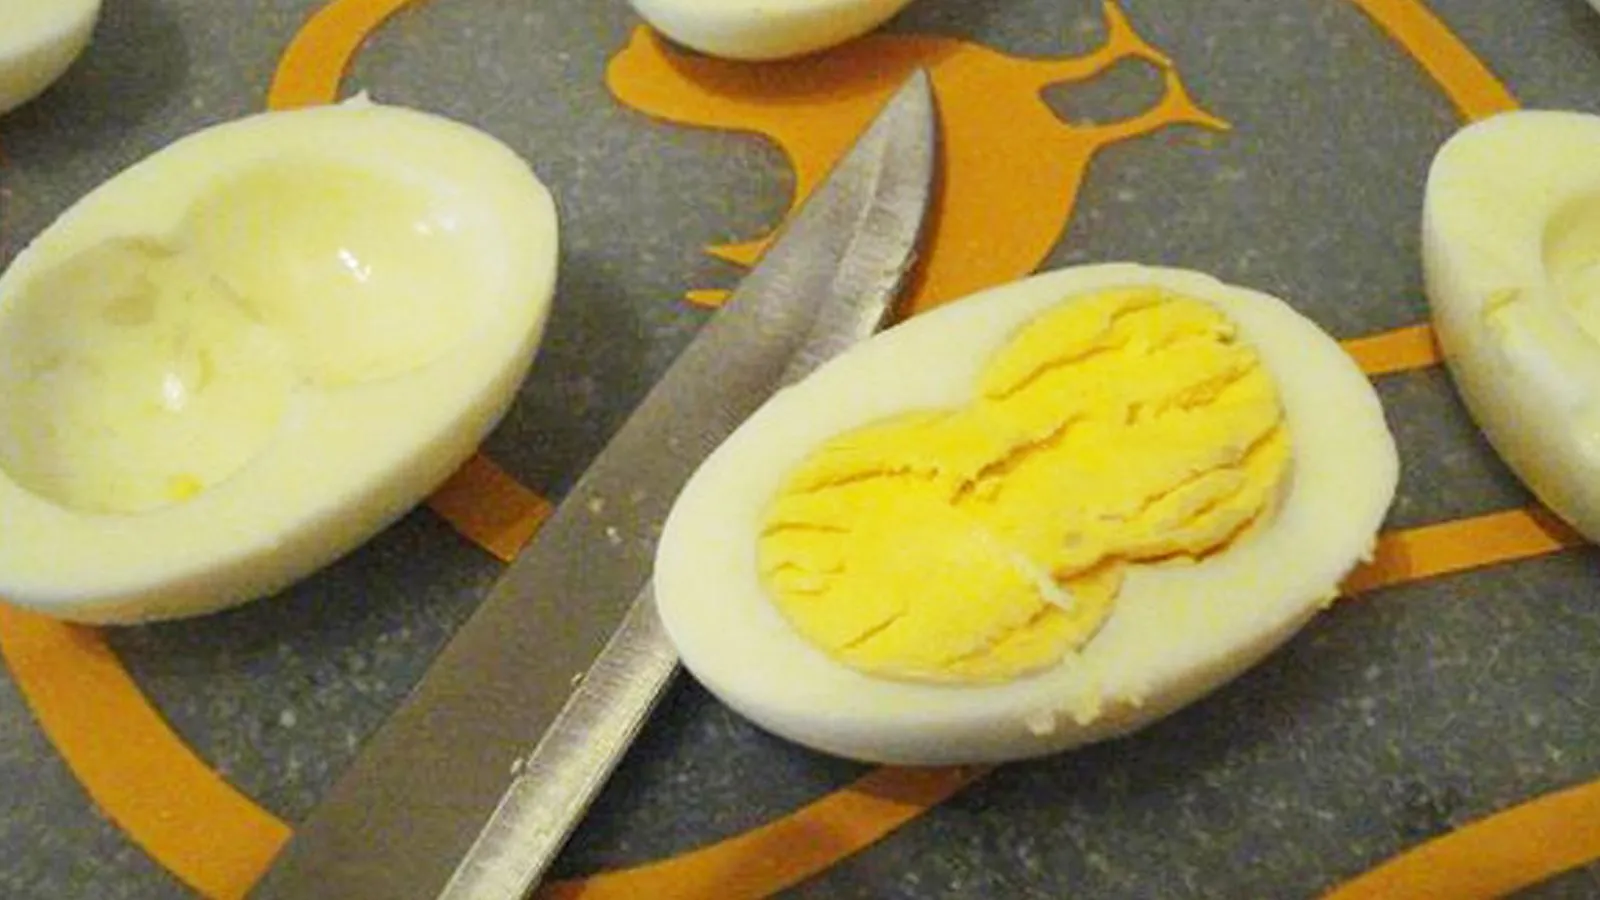 Sürpriz yumurta: Çift sarılı yumurta nasıl oluşur? Çift sarılı yumurta nasıl anlaşılır?